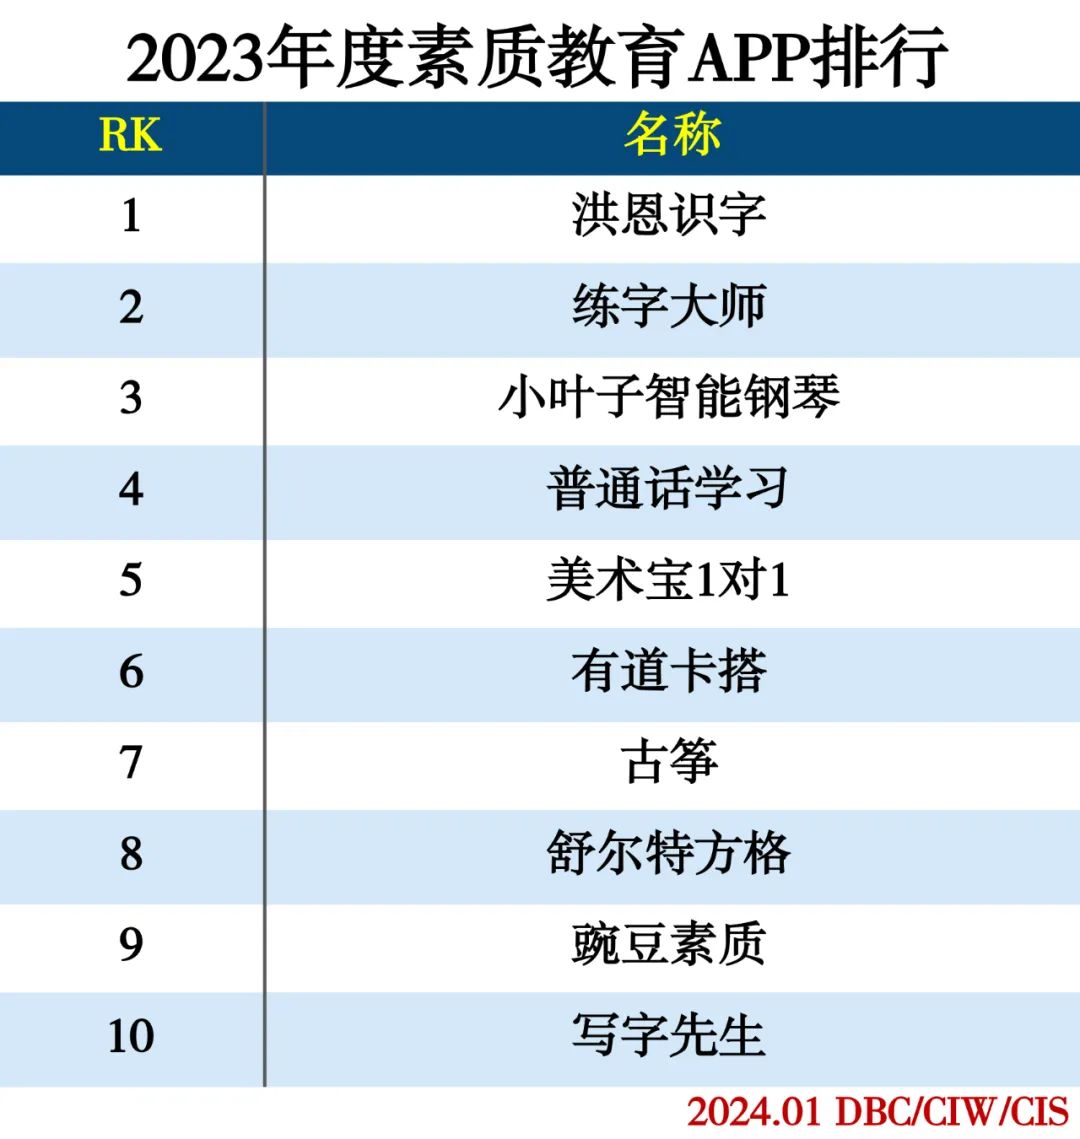 2023年度APP分类排行